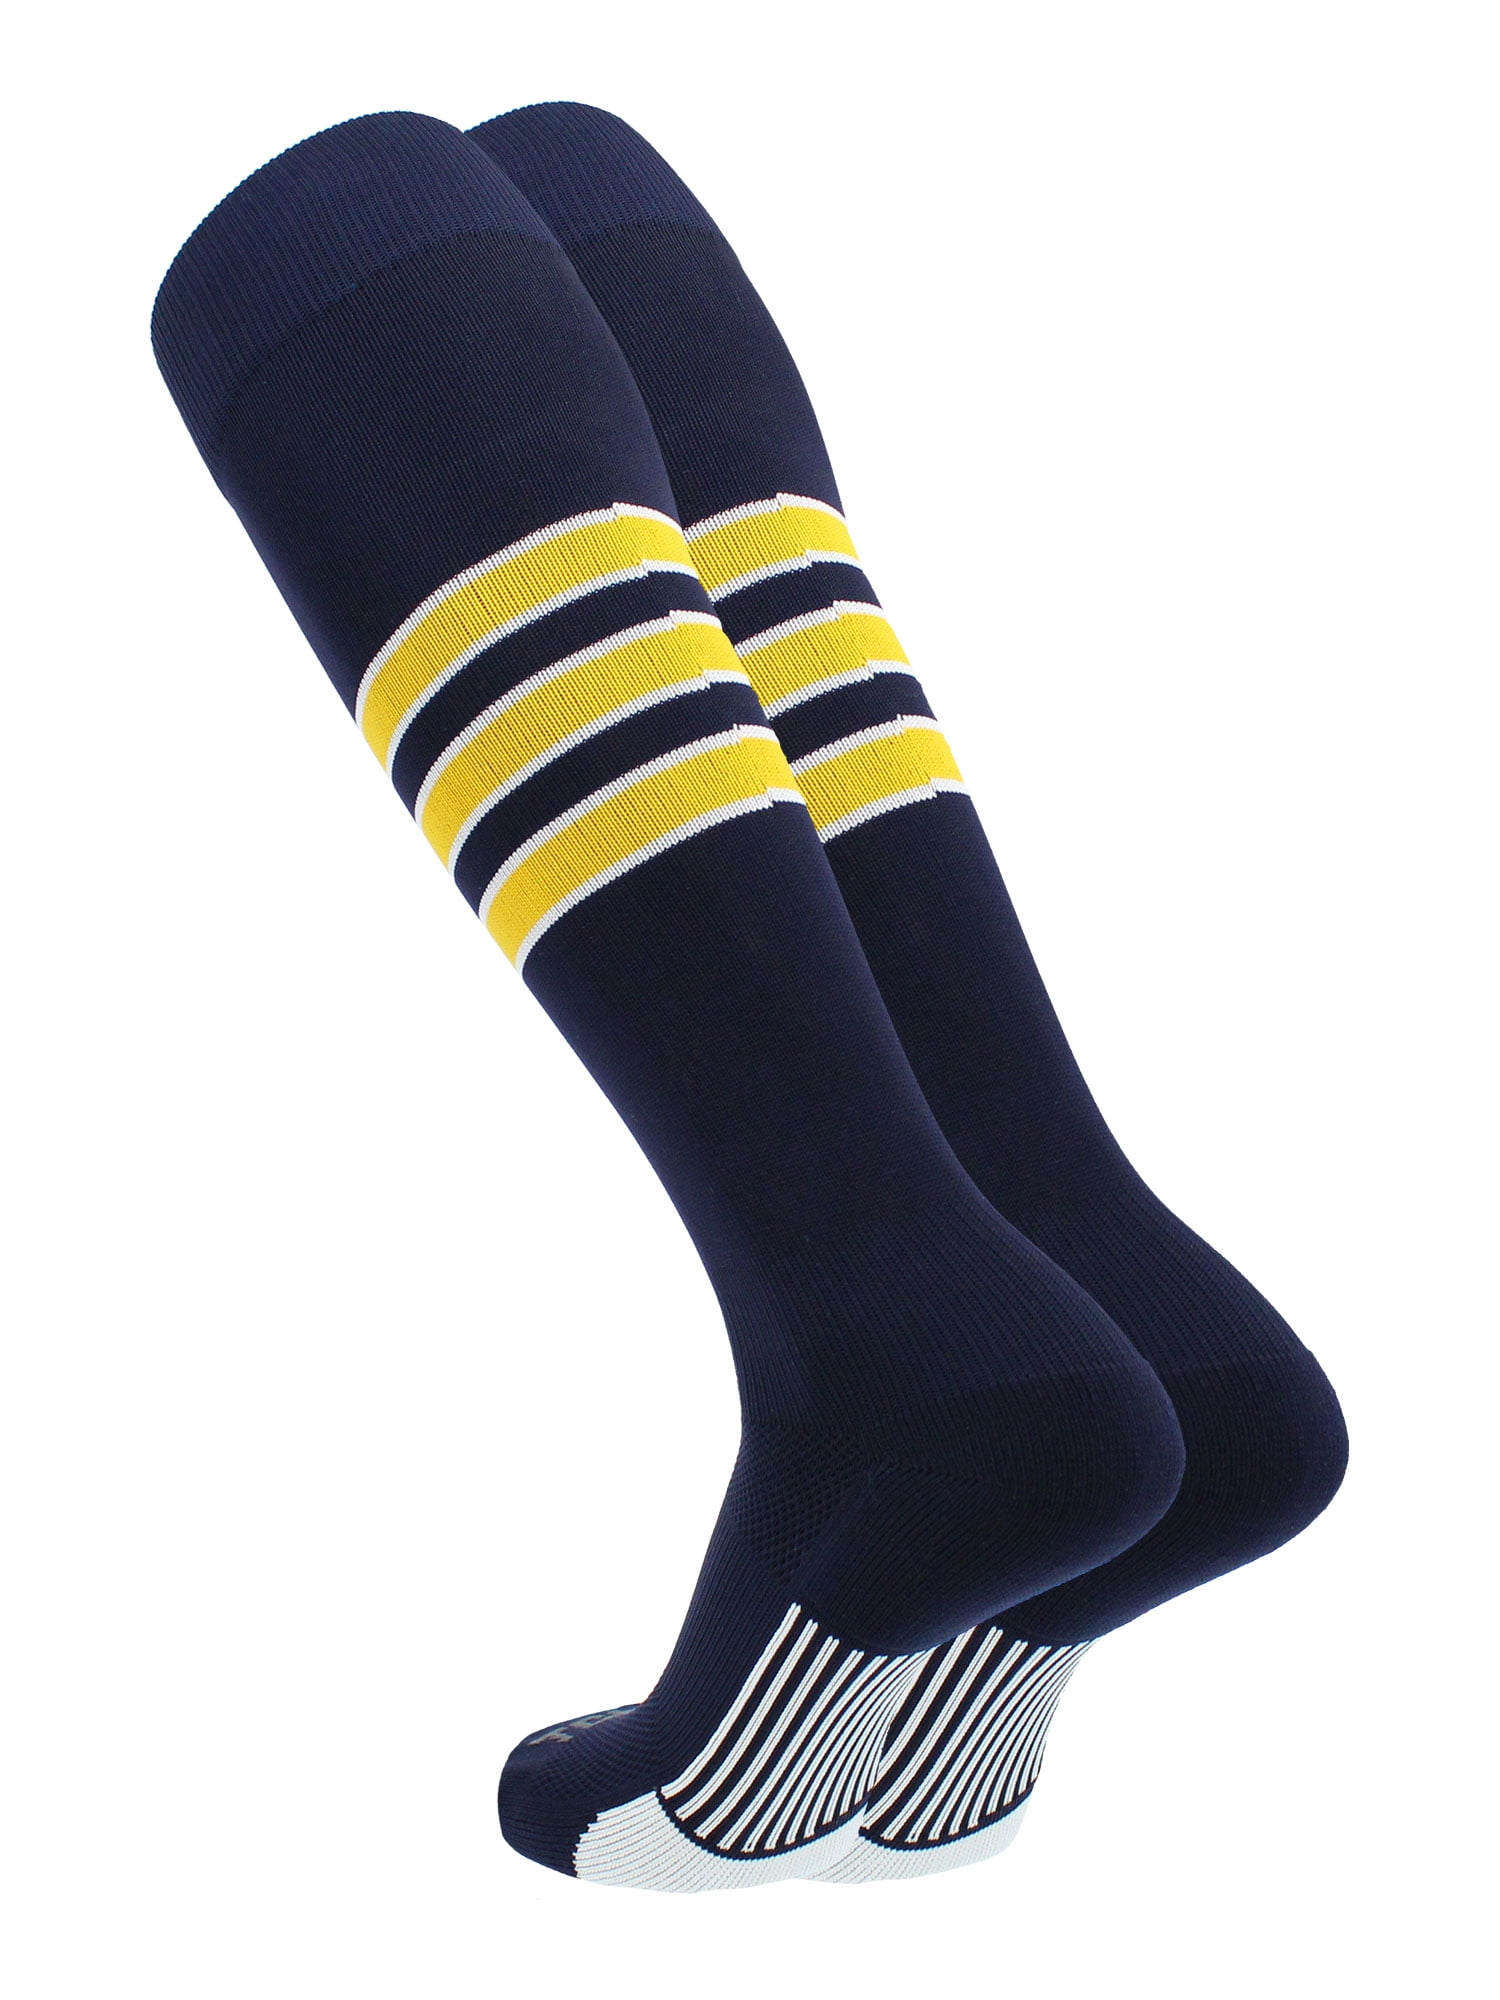 TCK Performance Baseball/Softball Socks (Navy/White/Gold, Small ...